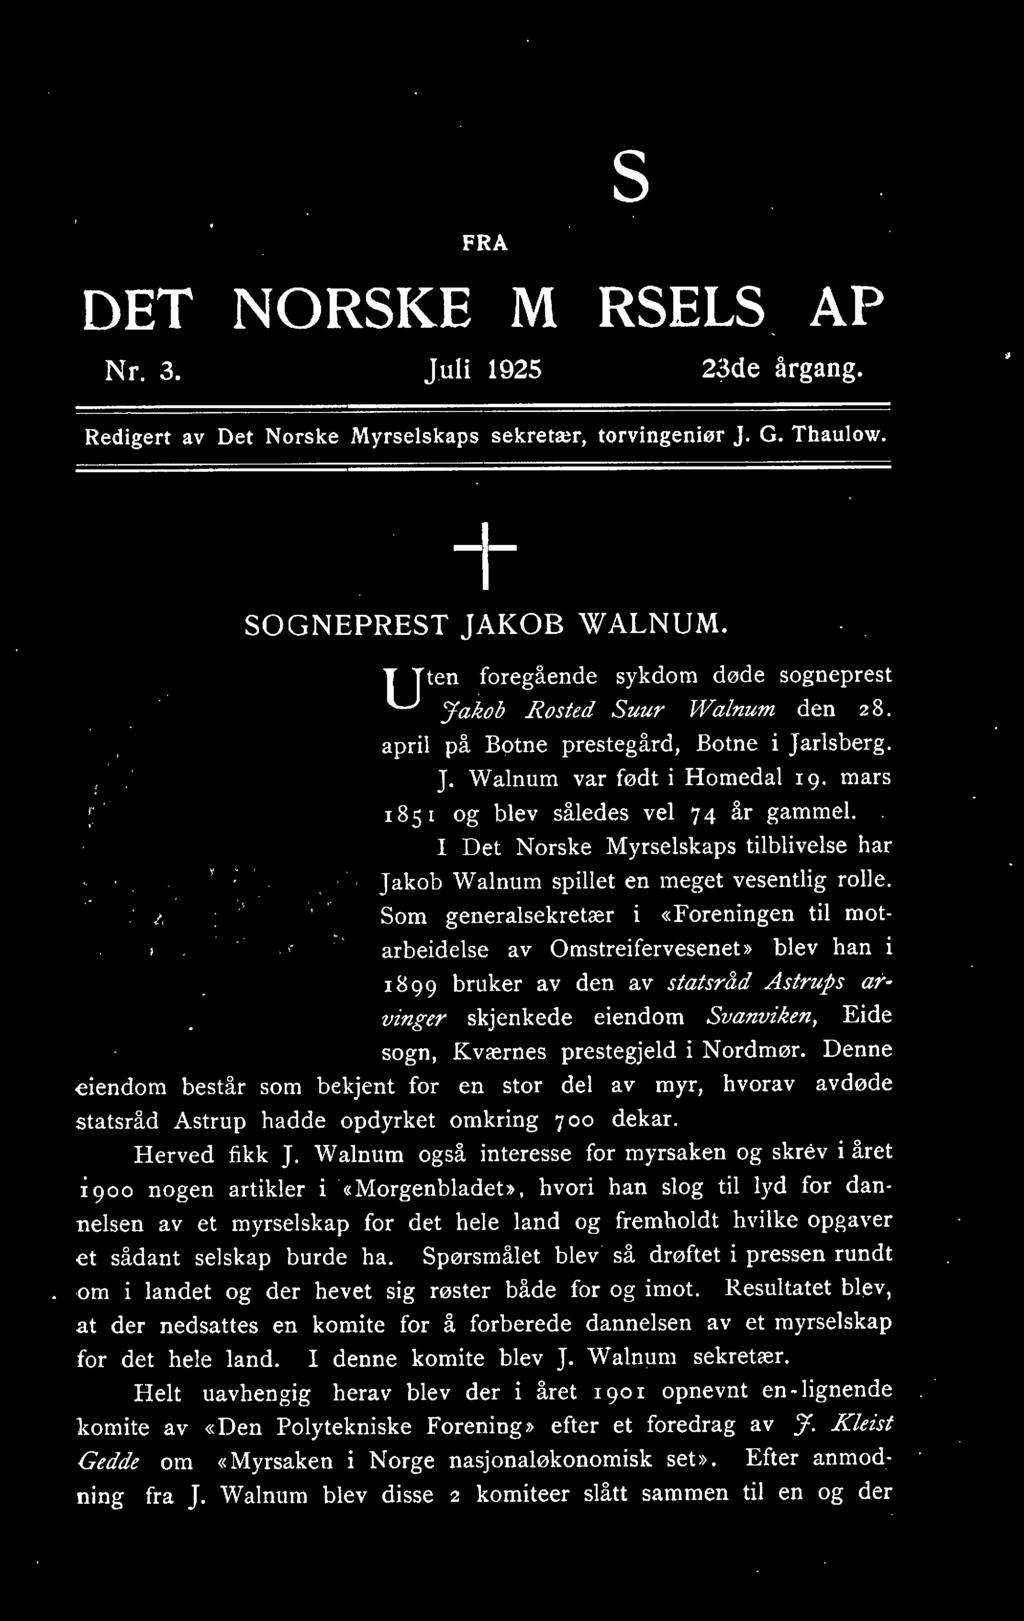 185 1 og blev således vel 7 4 år gammel.. I Det Norske Myrselskaps tilblivelse har Jakob Walnum spillet en meget vesentlig rolle.